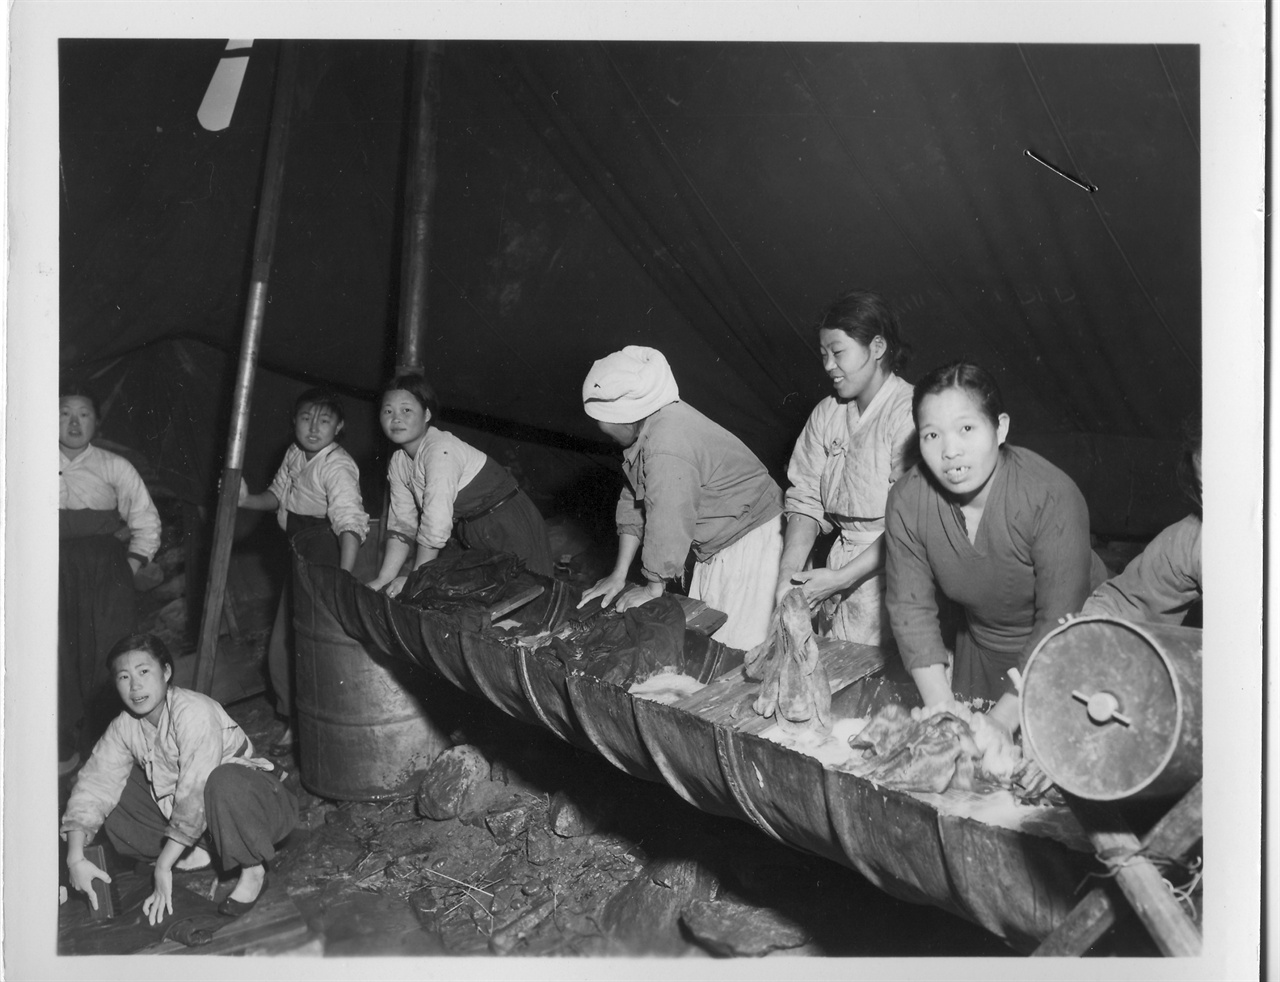  1954. 3. 3. 미군부대 근처 천막에서 한국의 여인들이 미군의 세탁물을 빨래하고 있다. 